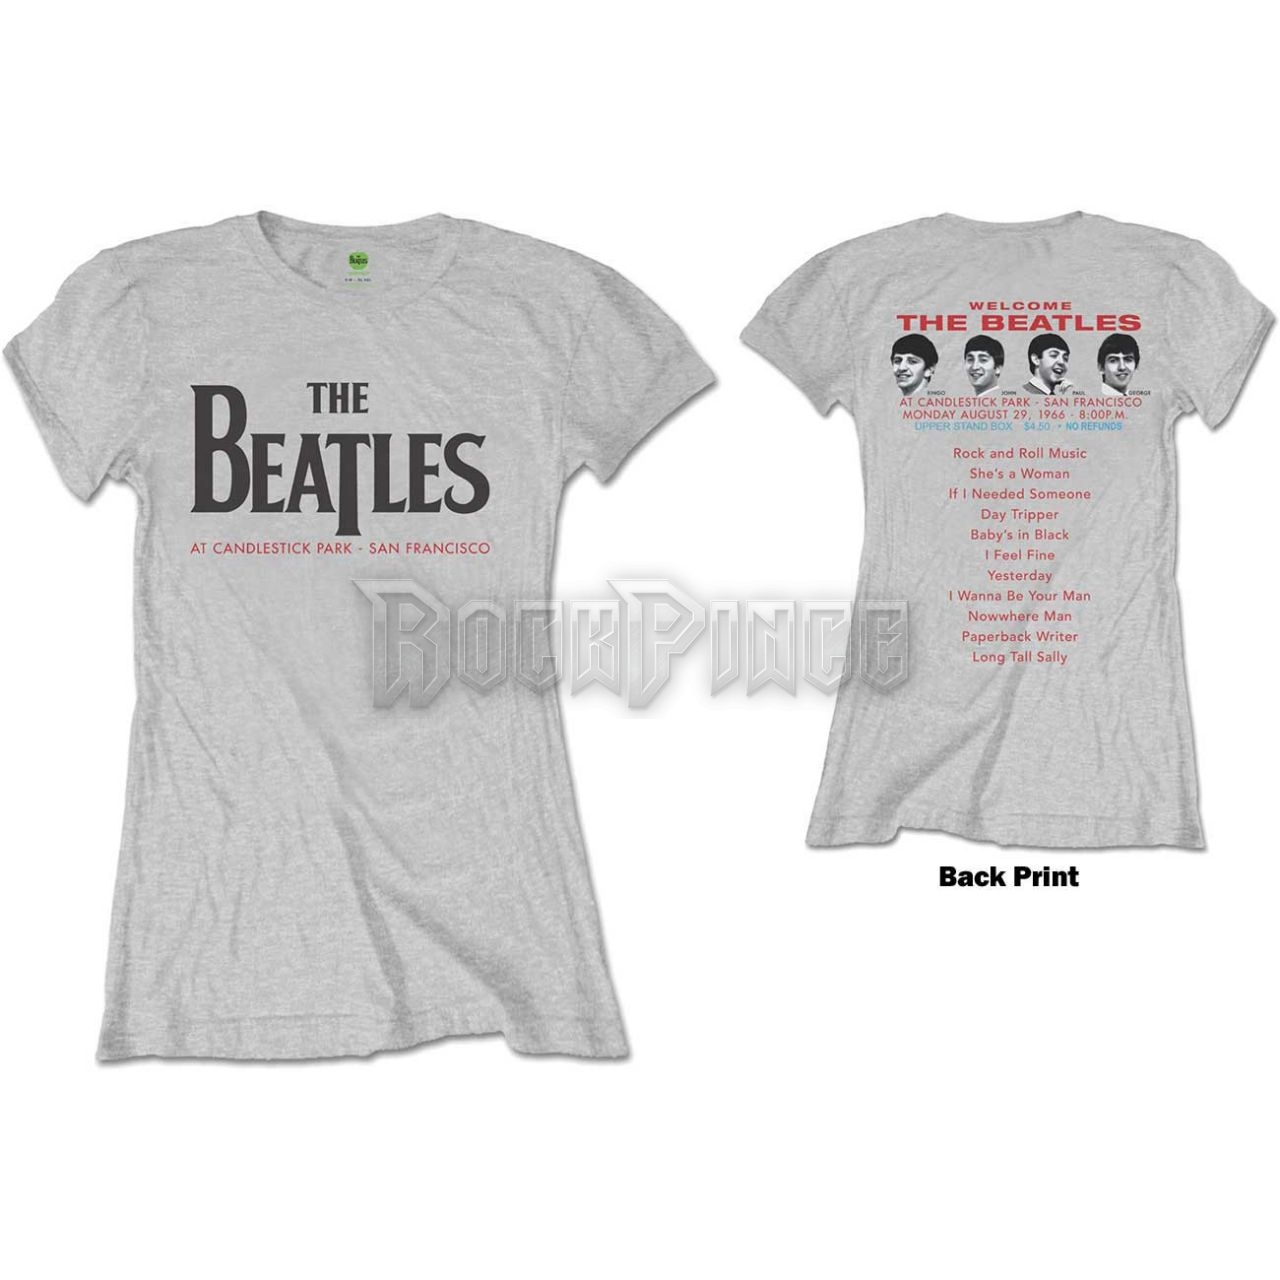 The Beatles - Candlestick Park - női póló - BEATTEE375LG